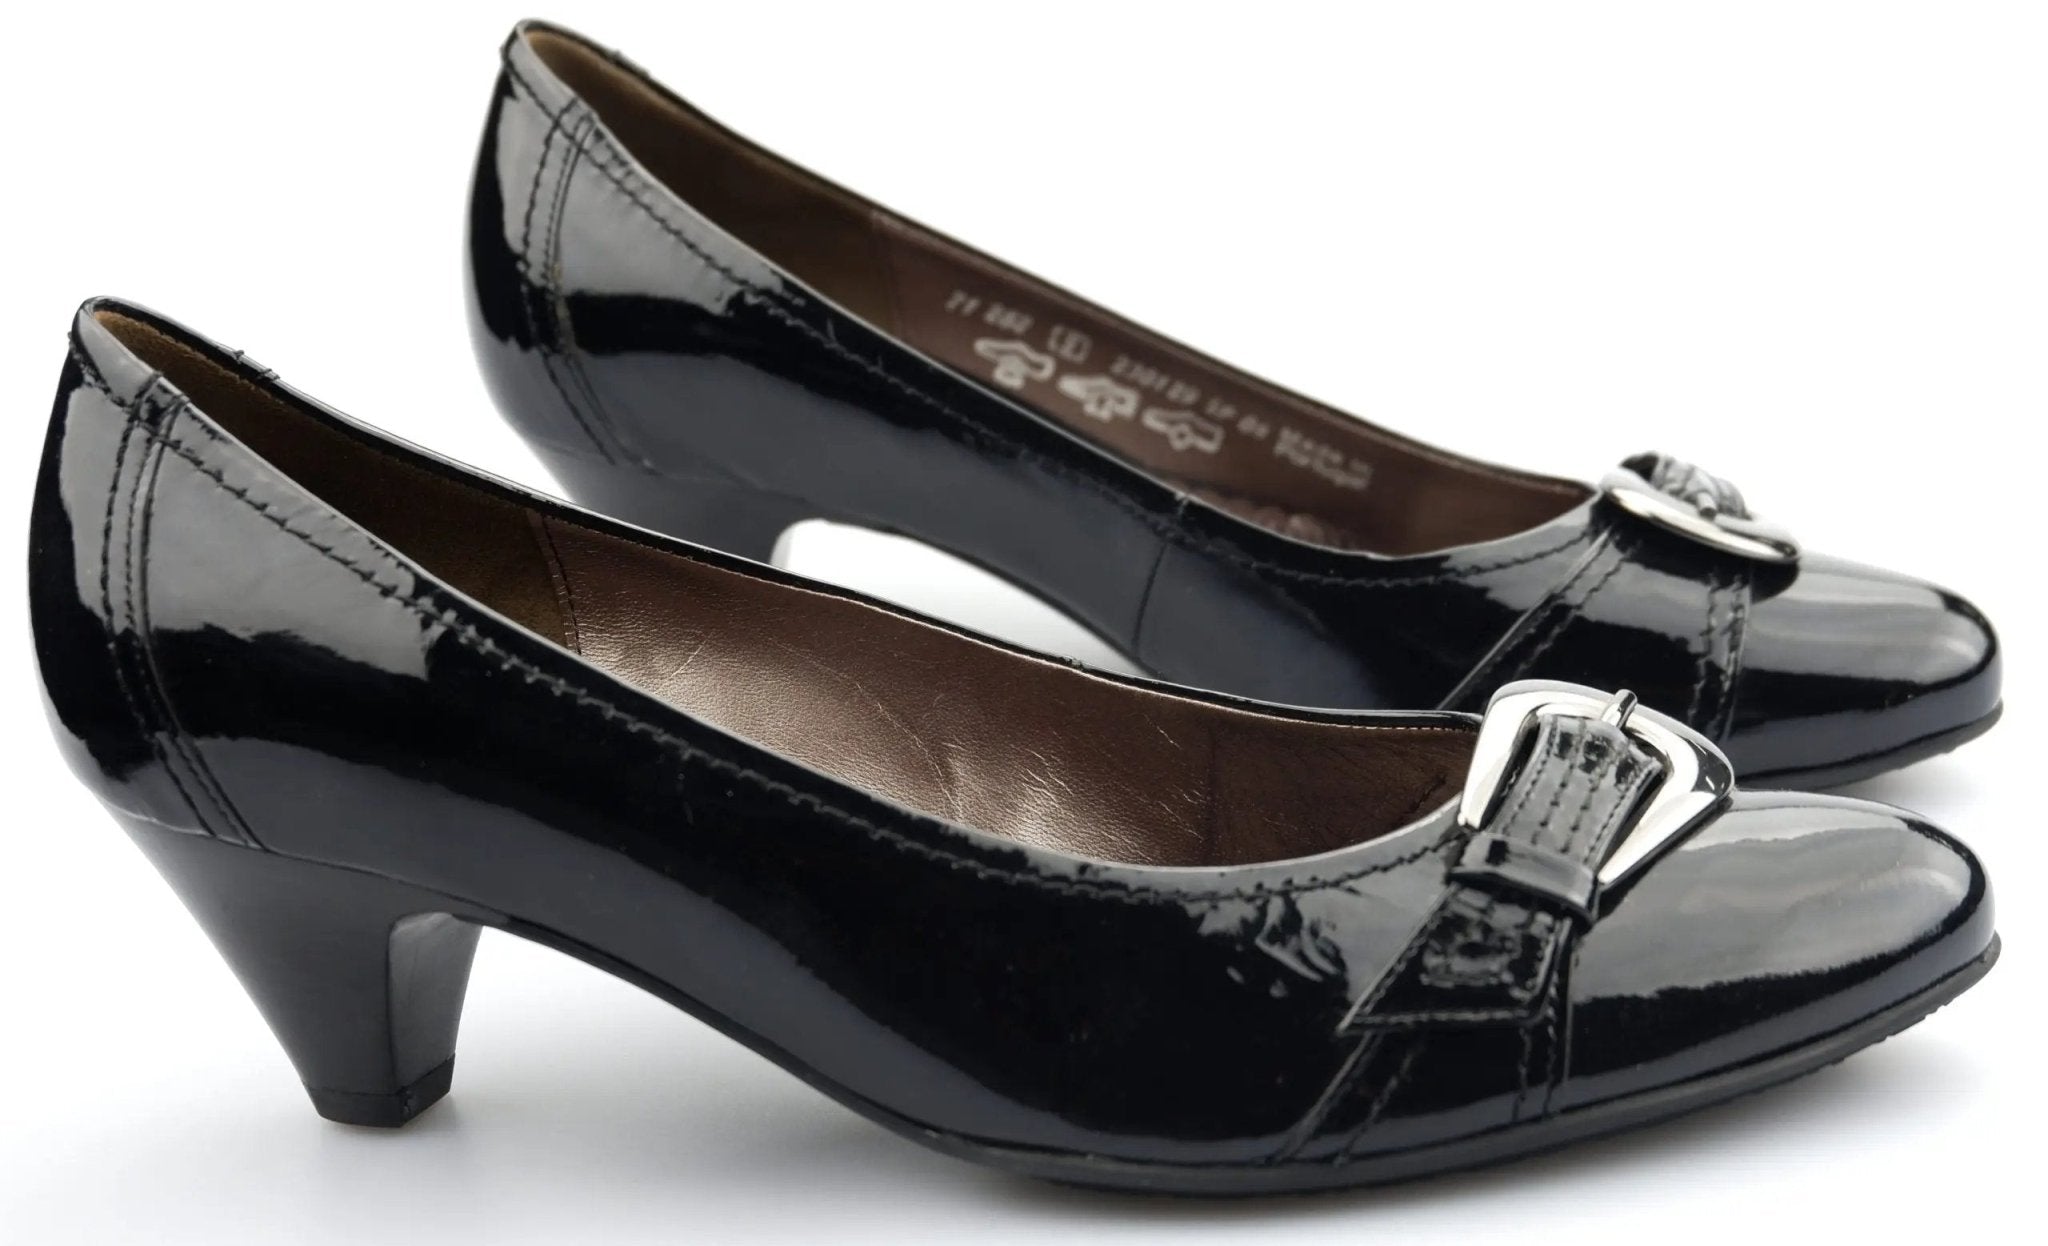 Gabor pumps 71.282.97 black patent leather - ChaplinshoesGabor pumps 71.282.97 black patent leatherGabor